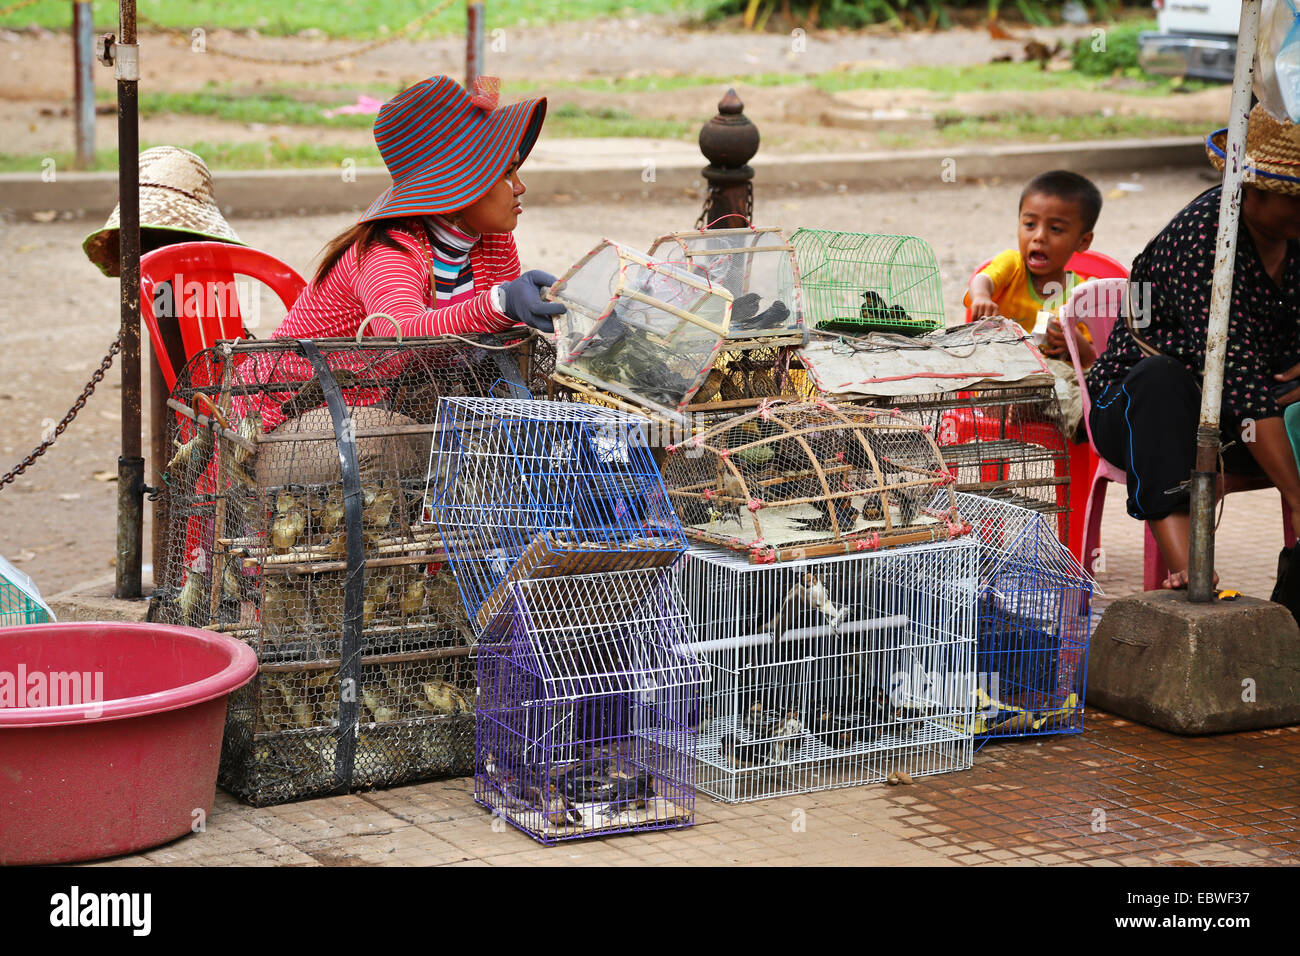 Straßenszene mit Leute verkaufen Vögel in Käfigen für Tempelopfern, Siem Reap, Kambodscha. Stockfoto